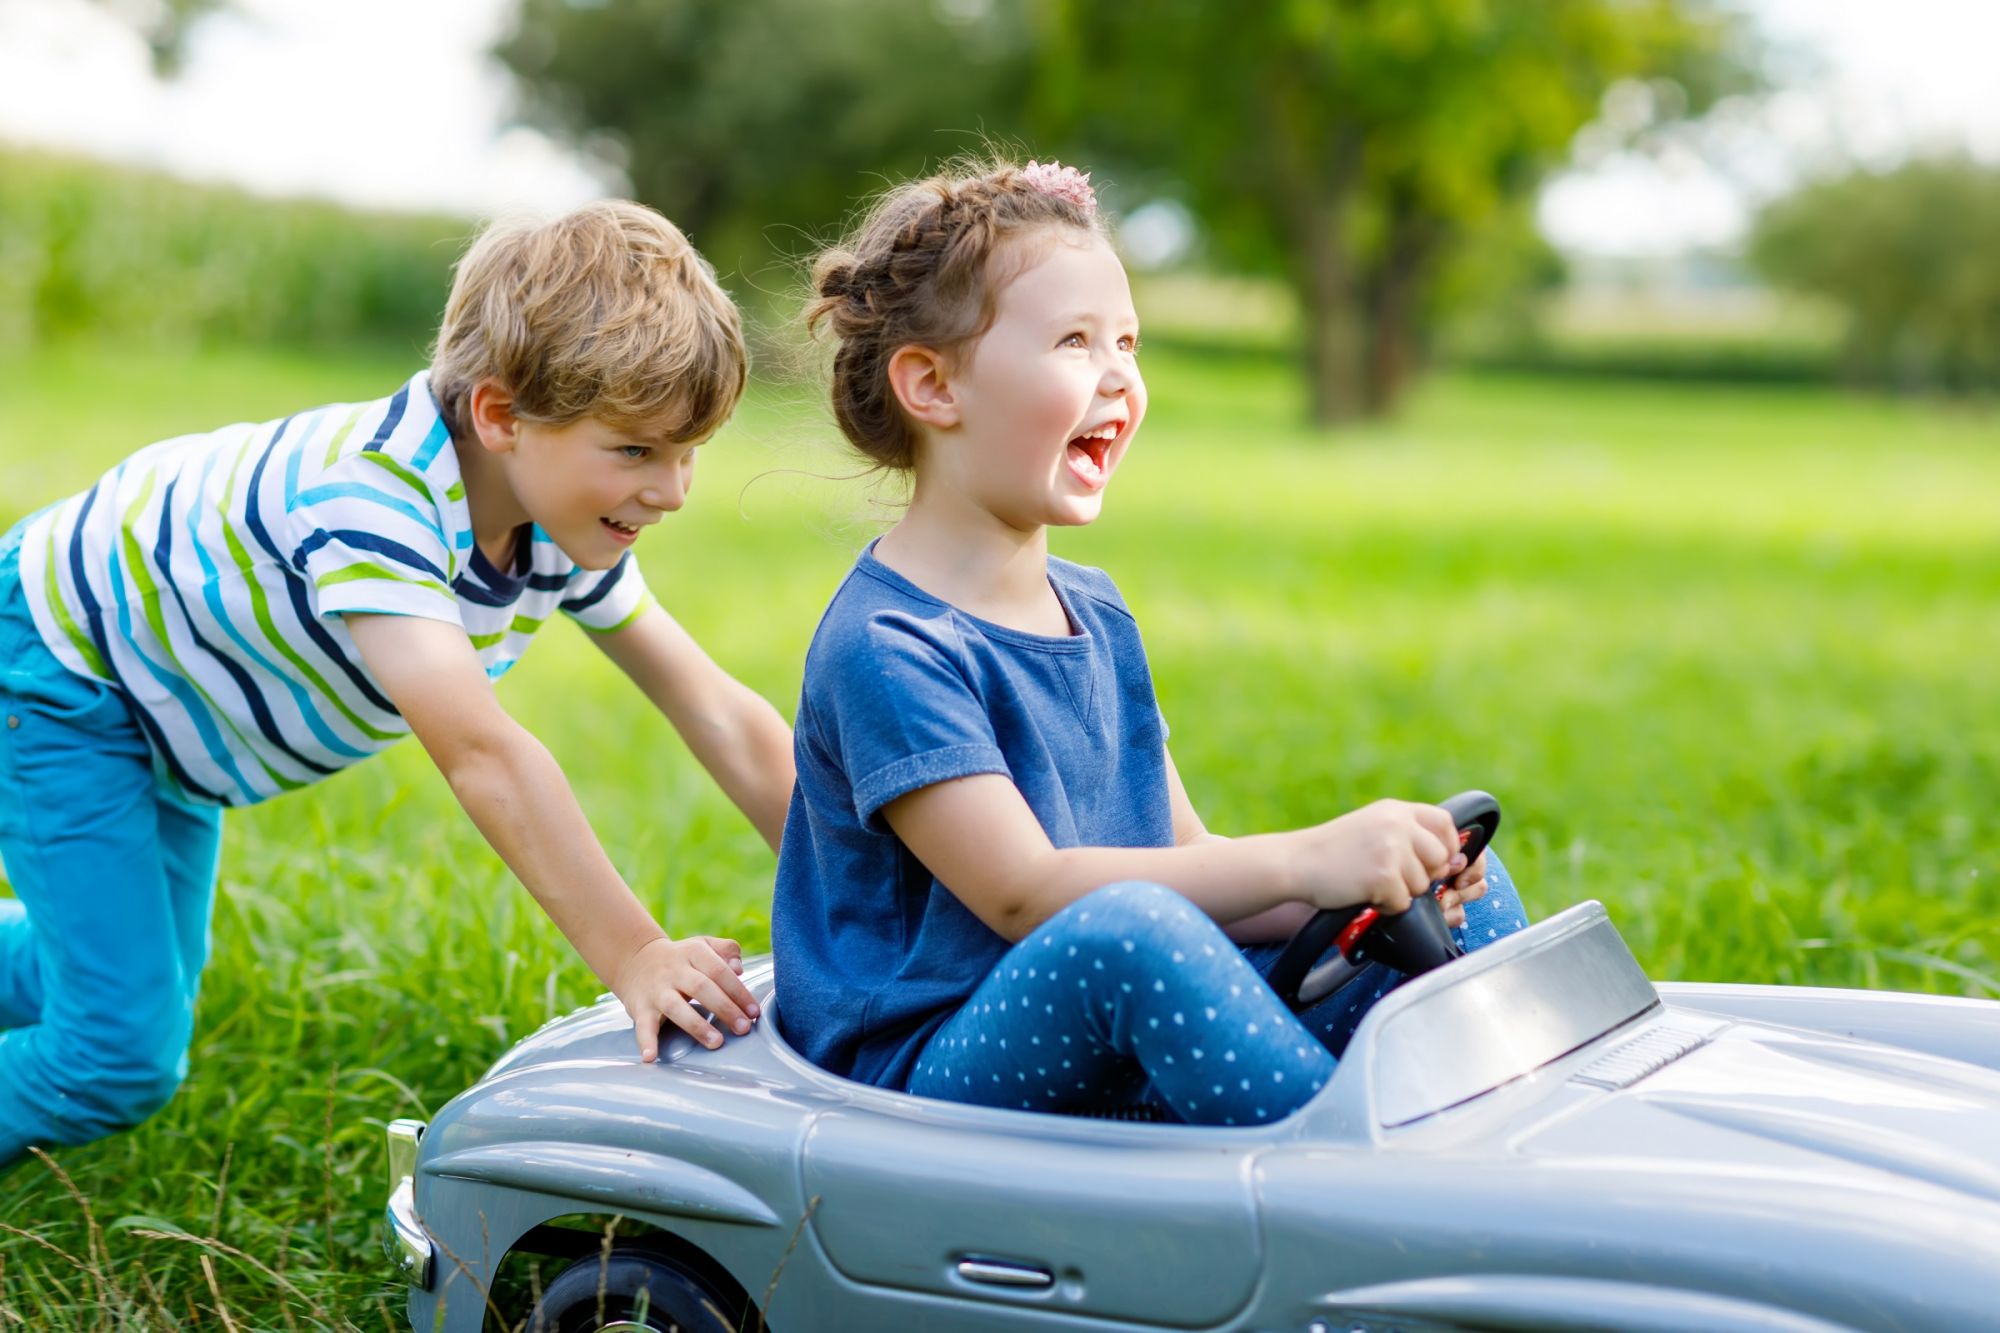 Zwei Kinder haben Spaß beim Spielen, ein Junge schiebt ein Mädchen im Auto an